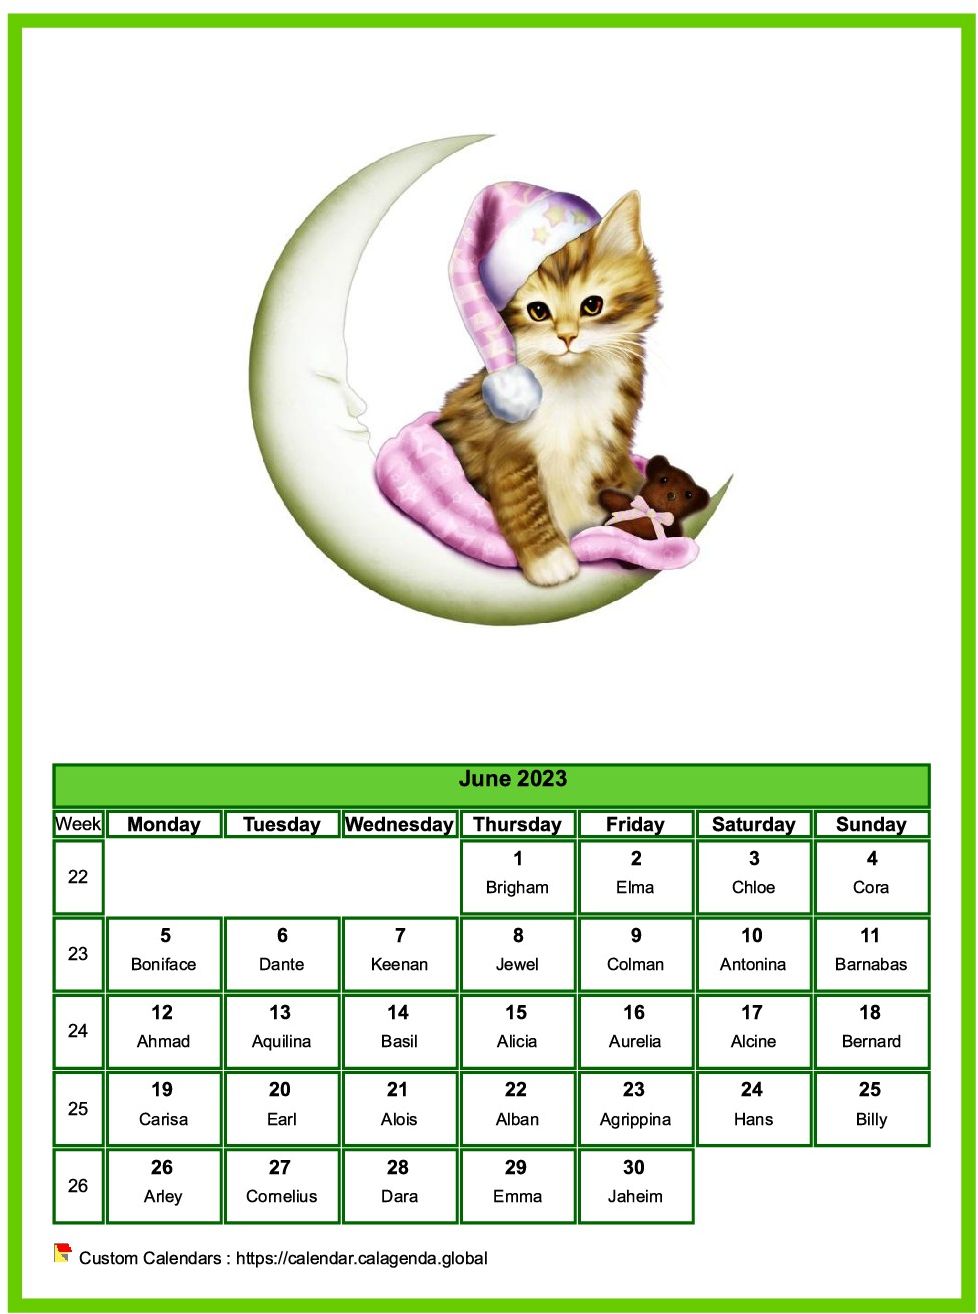 Calendar June 2023 cats